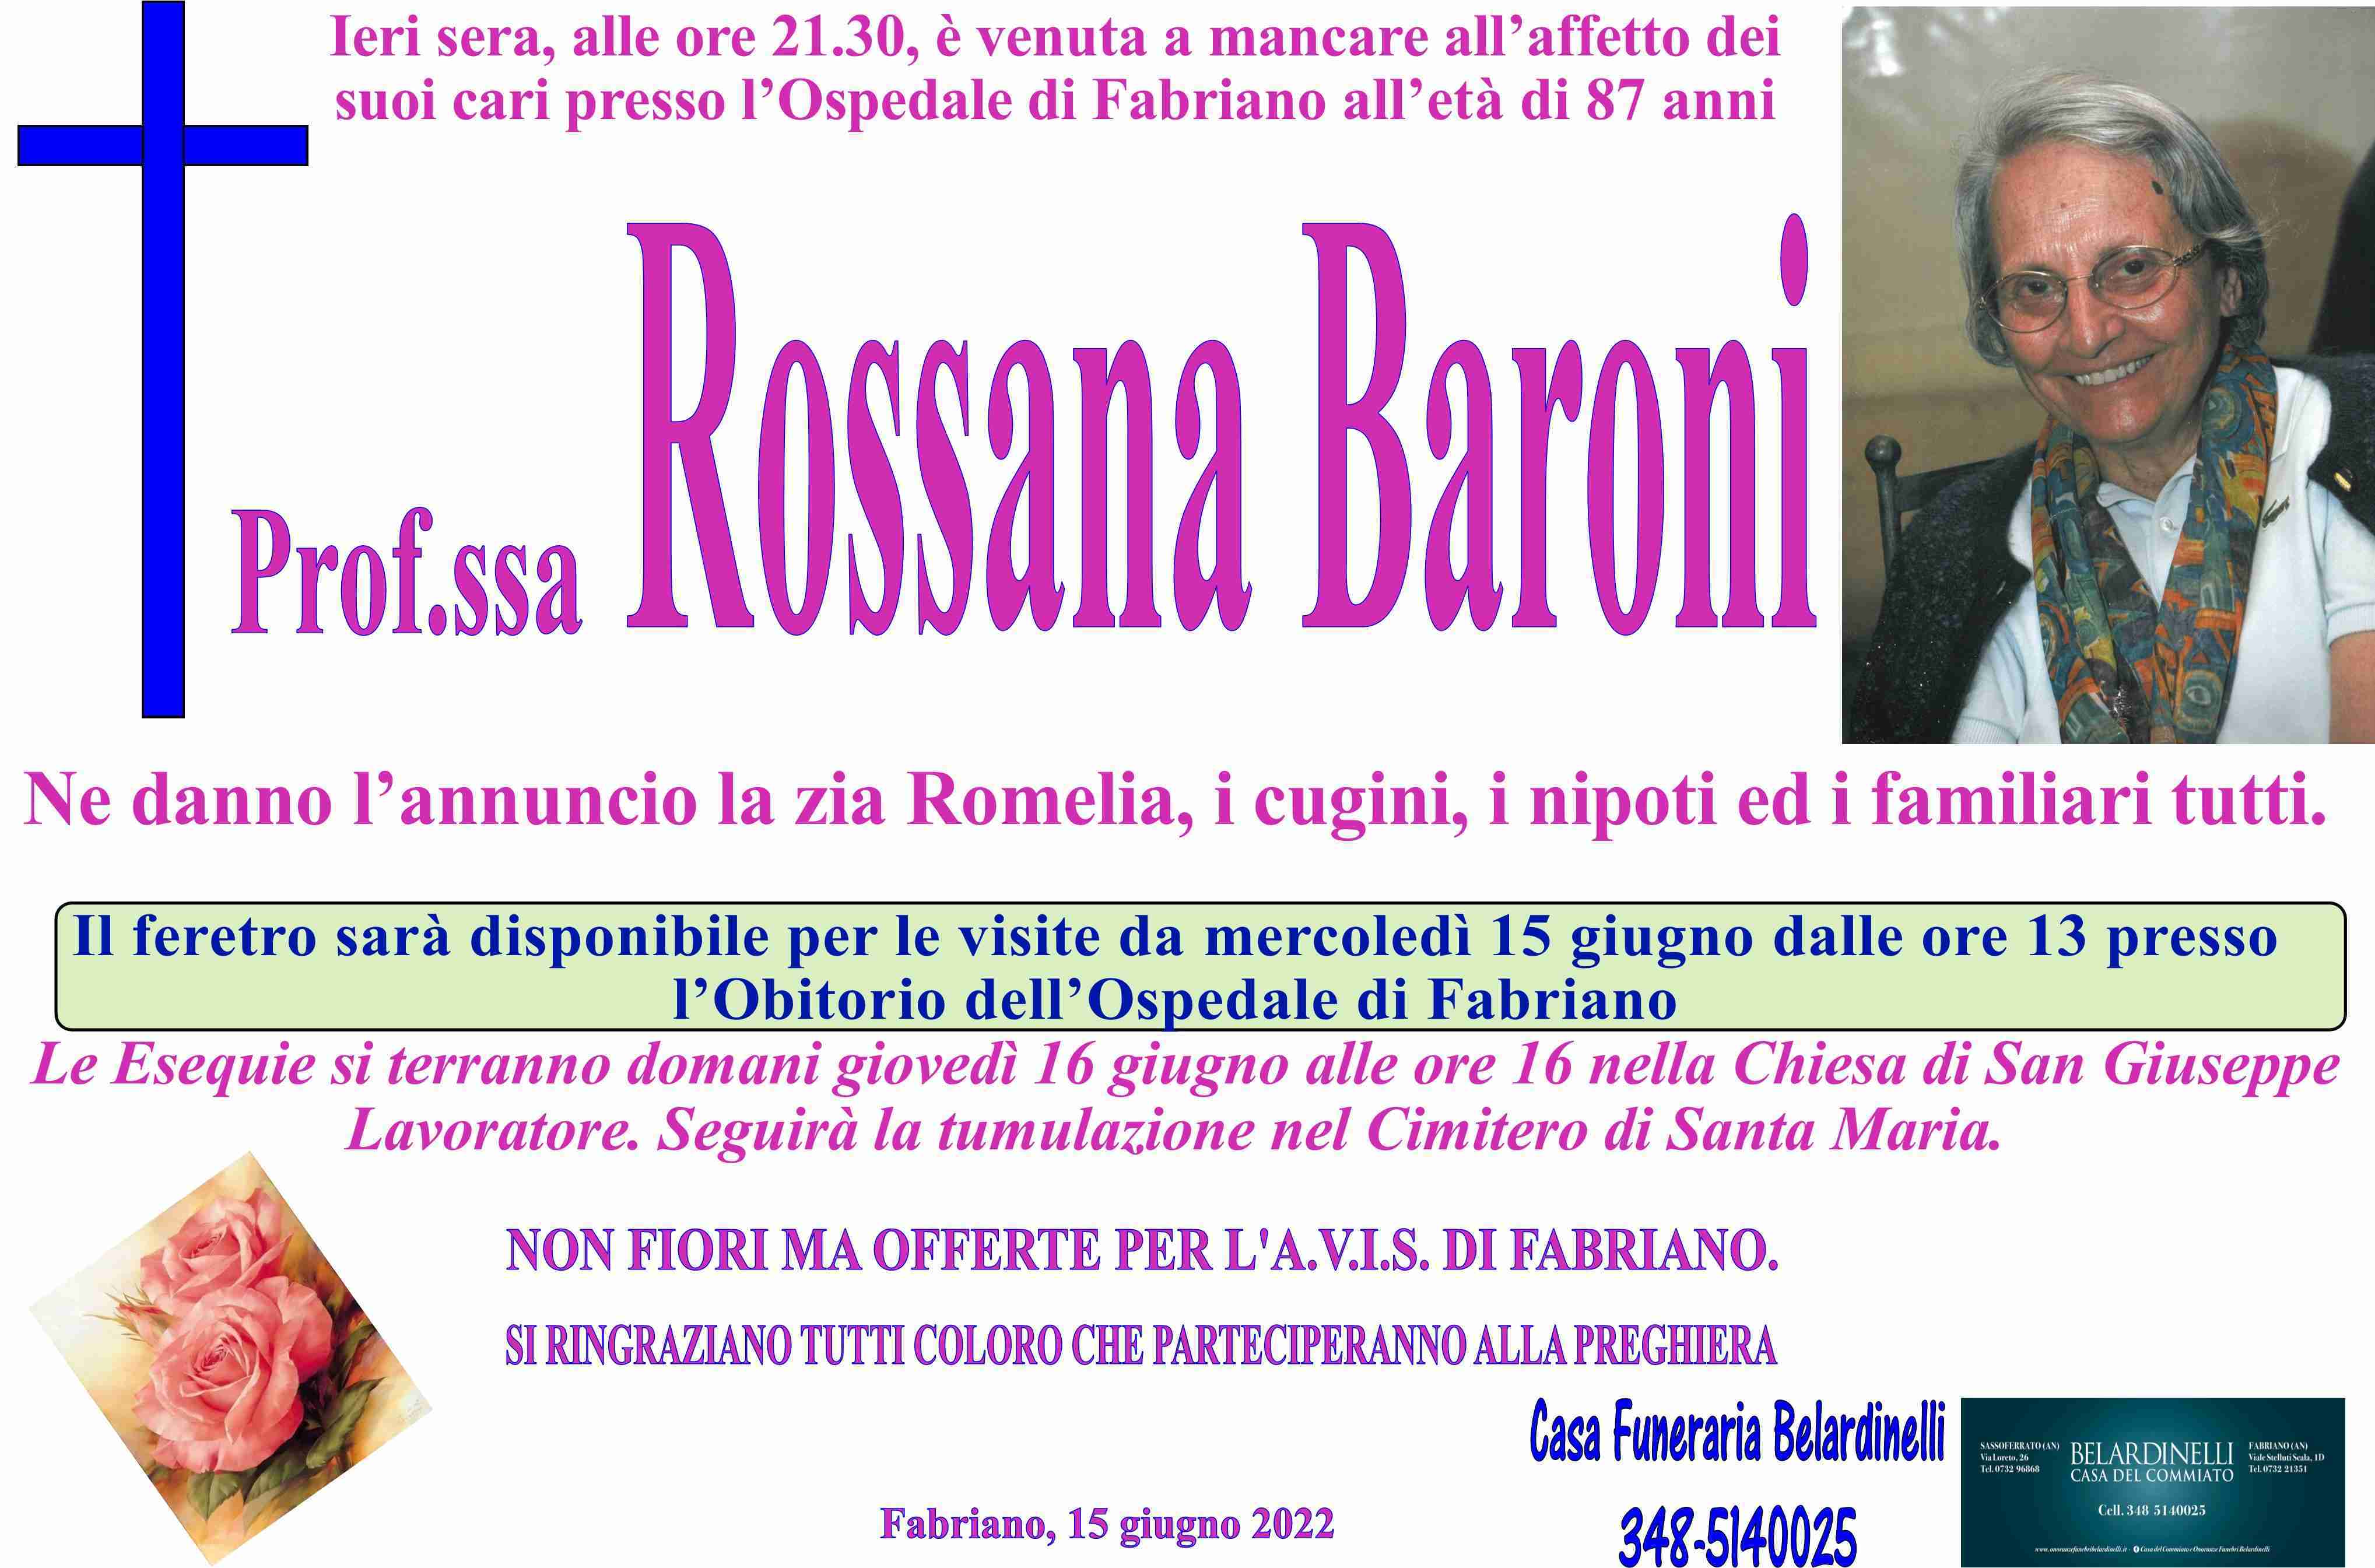 Rossana Baroni